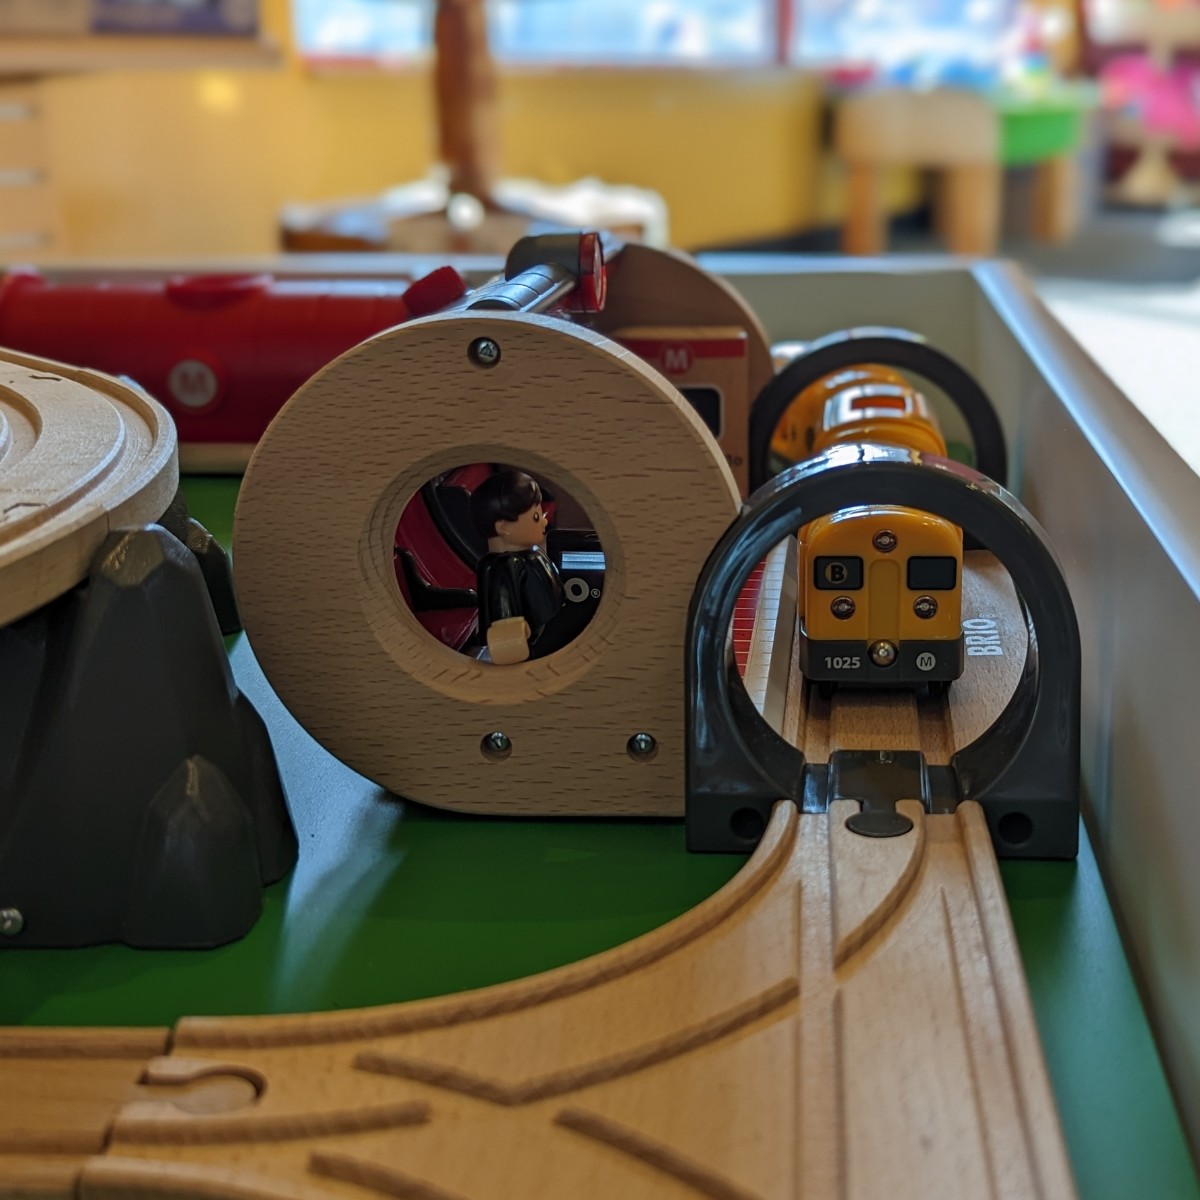 Brio wooden city tram set for children on sale at WonderLab.